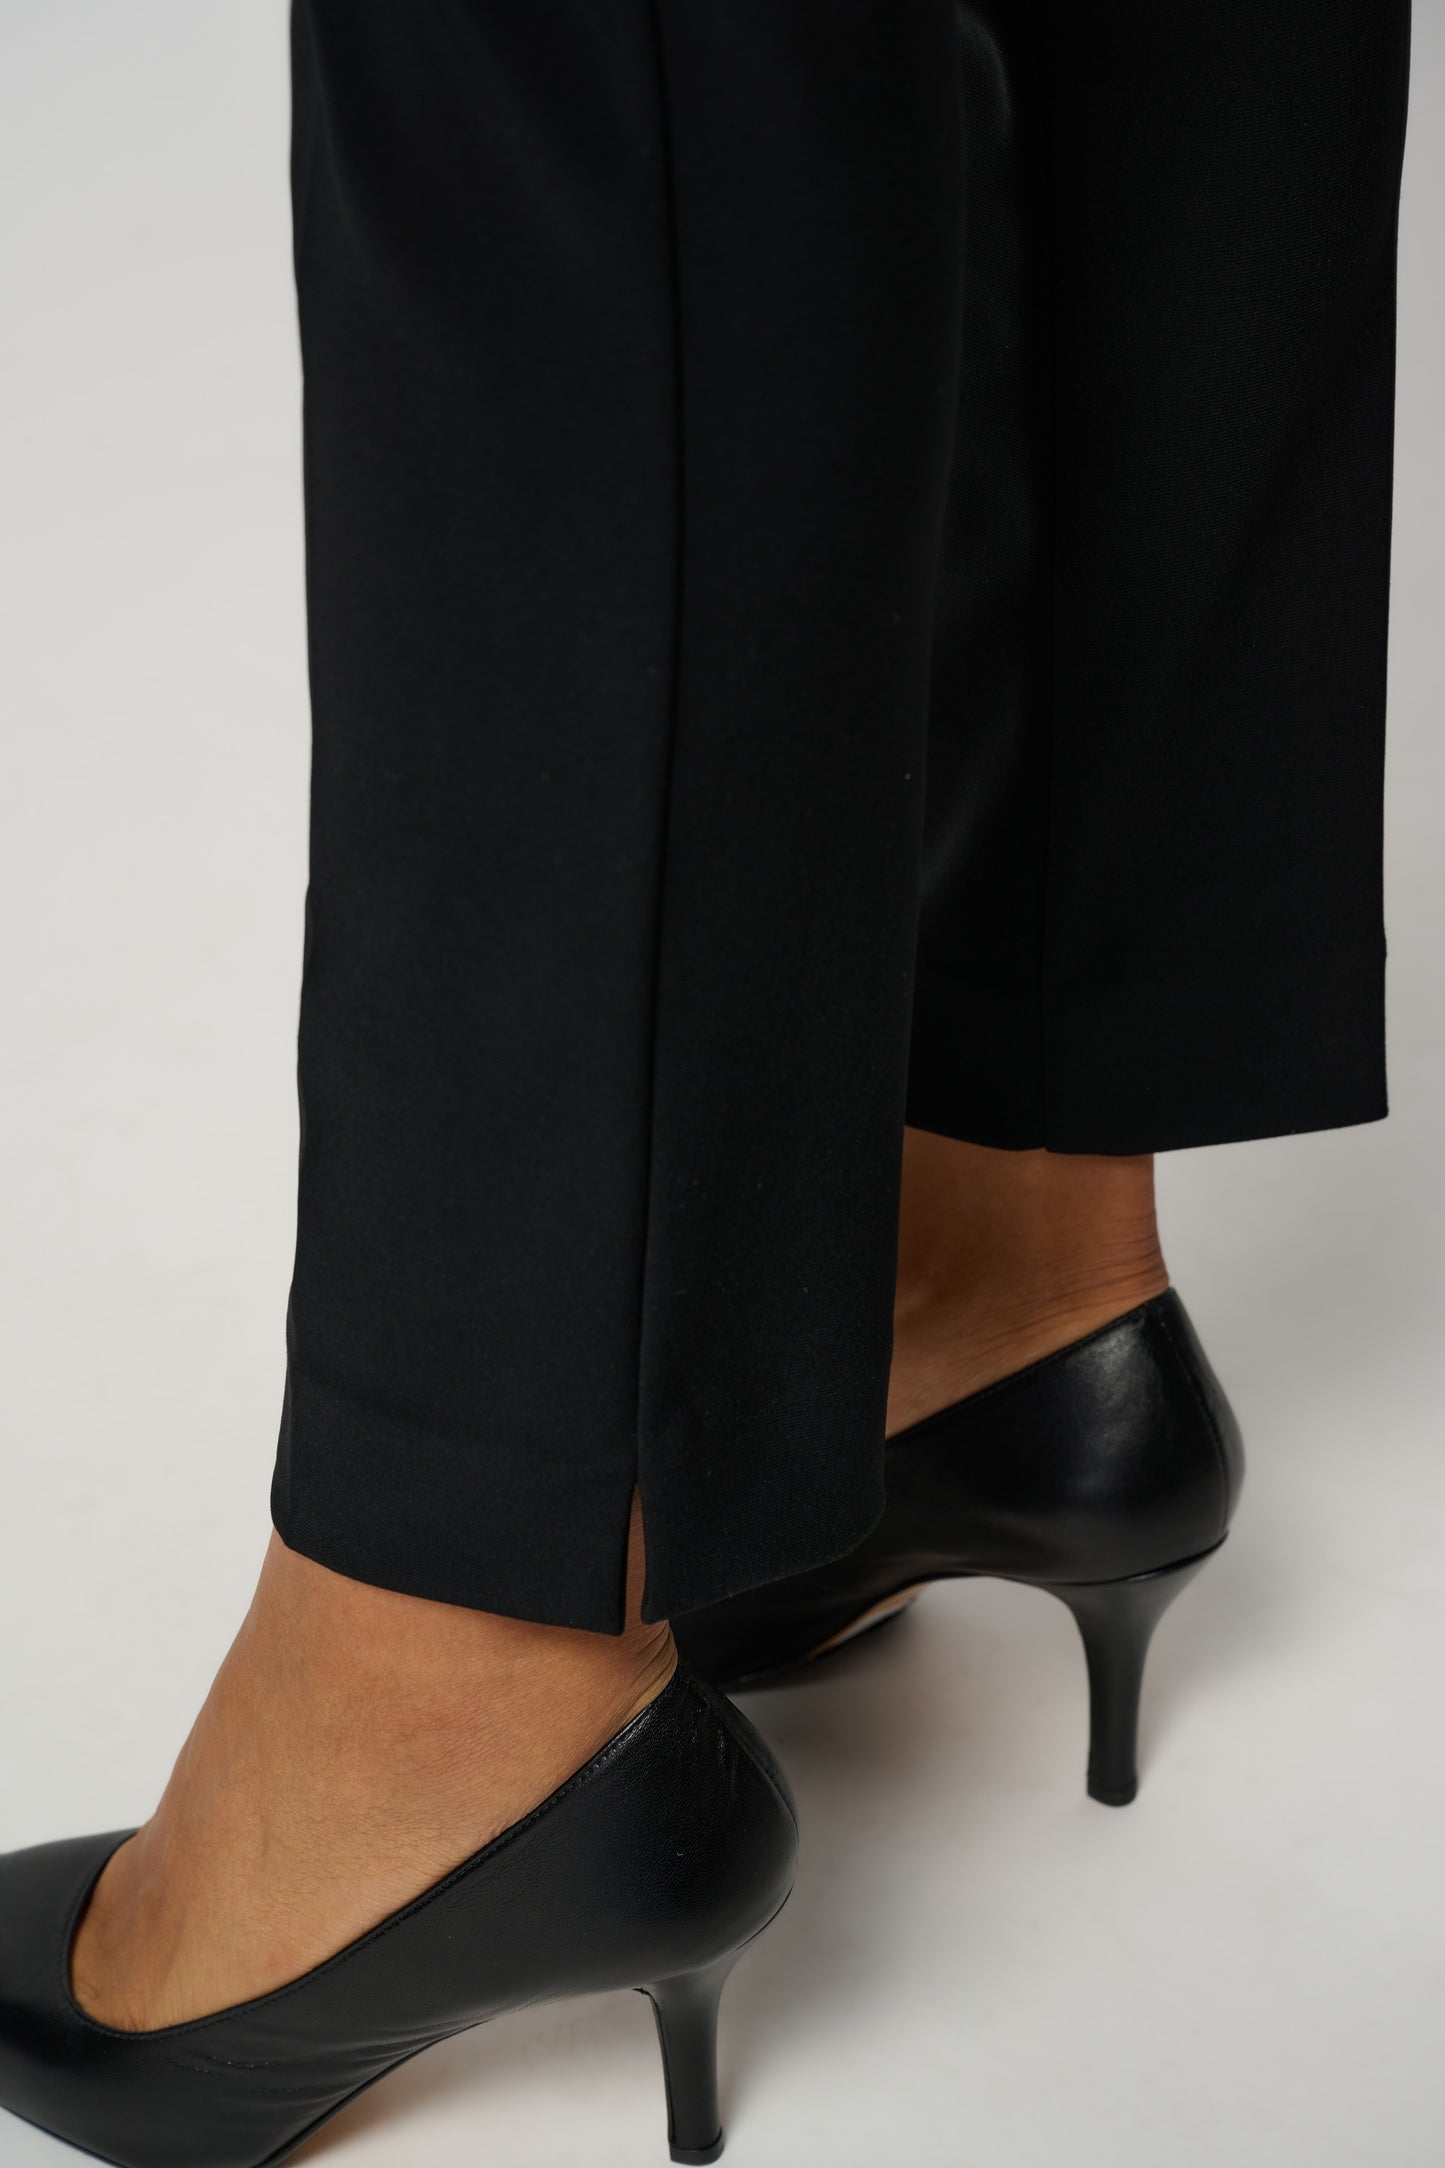 Pantalon noir à taille haute - Modèle 144092